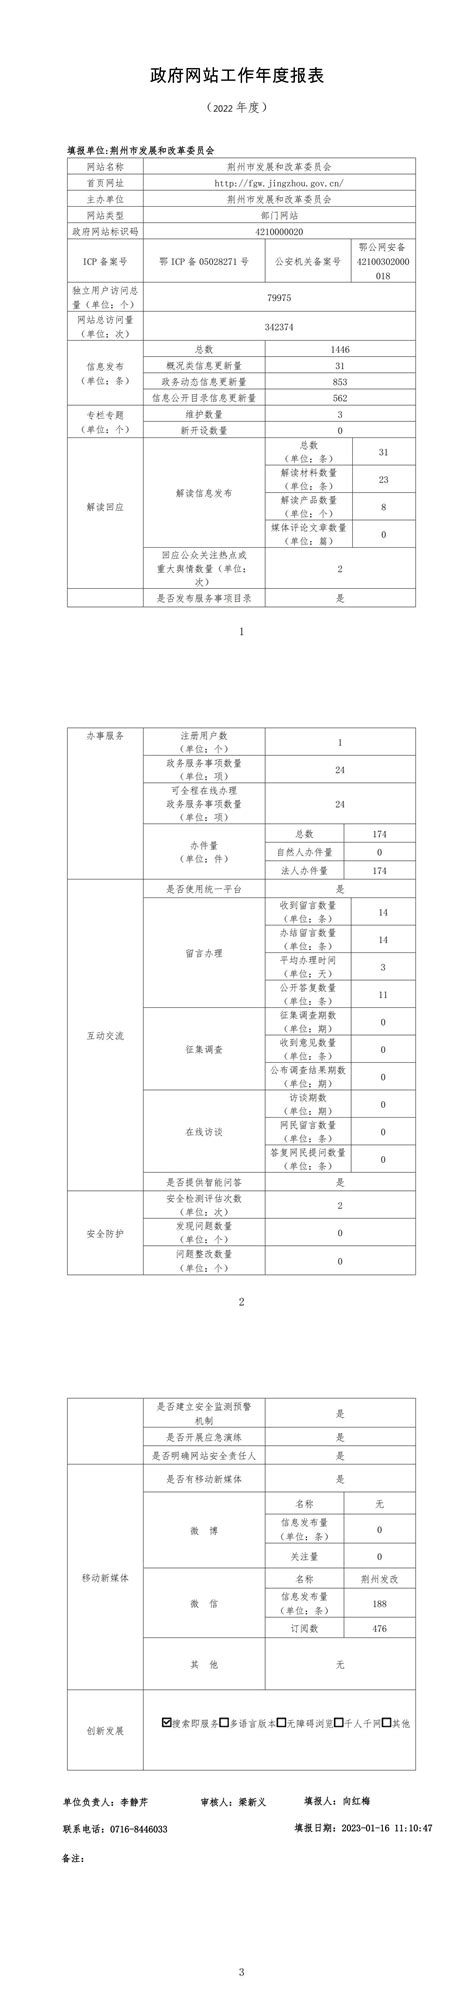 荆州市发展和改革委员会2022年度网站年度报表-荆州市人民政府-政府信息公开